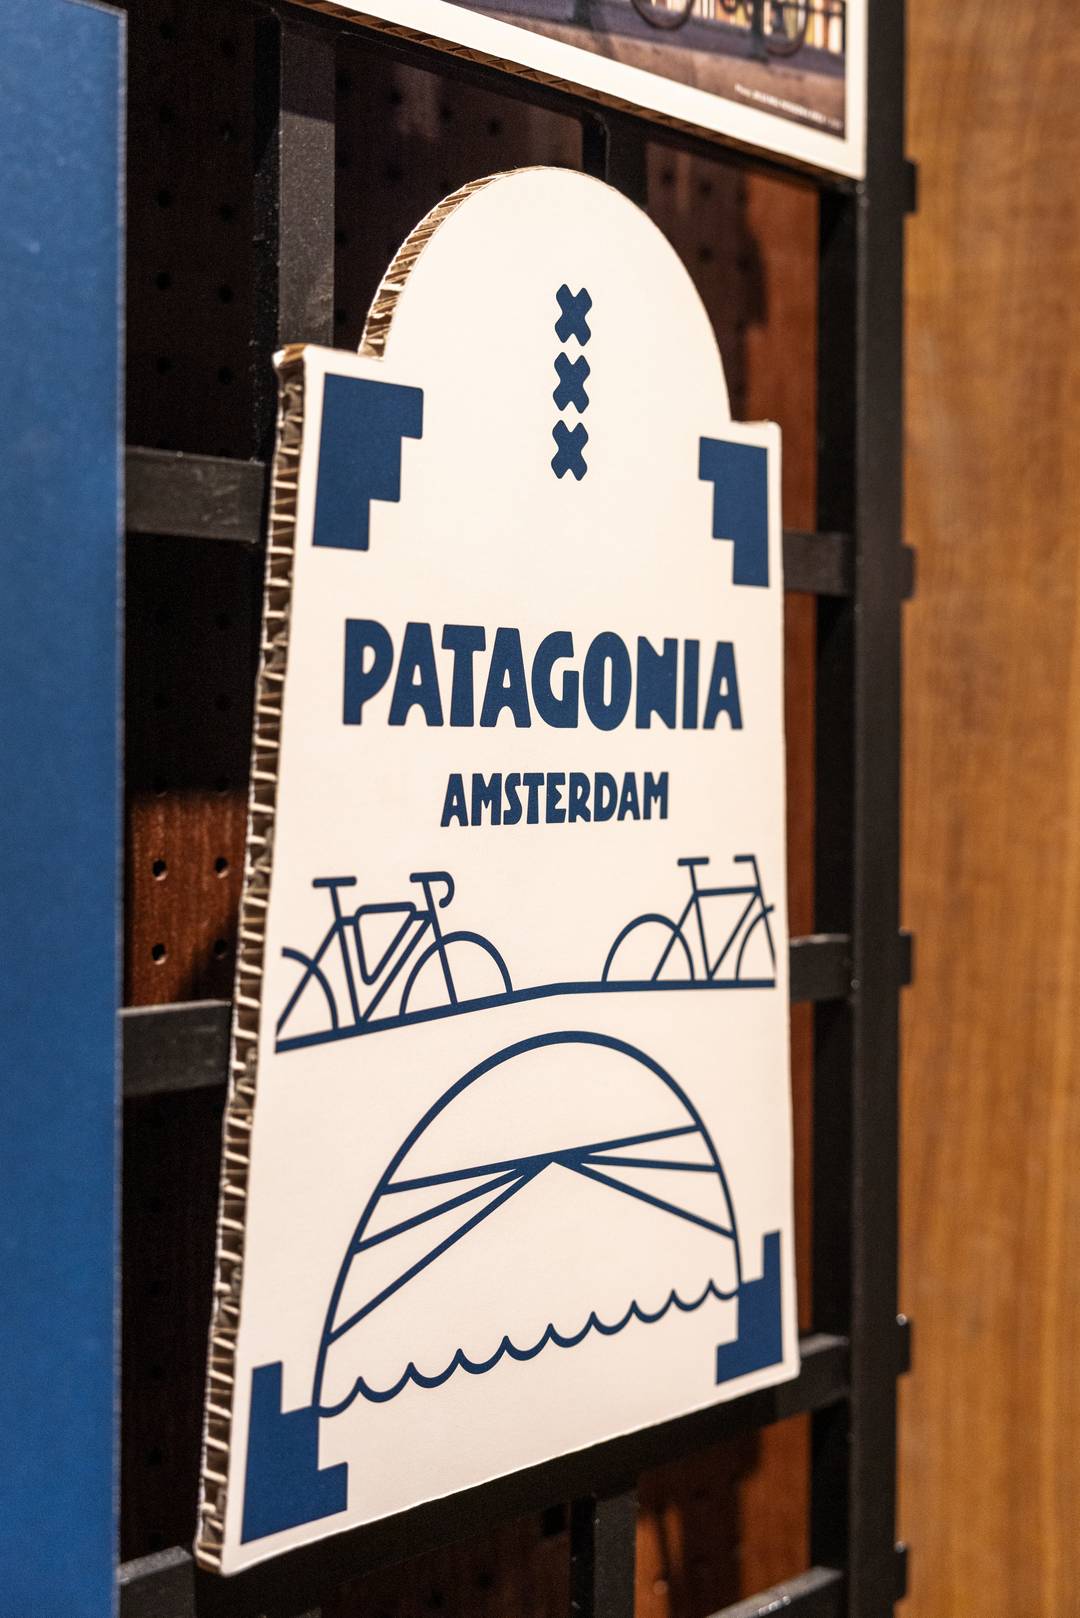 Het logo van de Amsterdamse Patagonia-winkel.